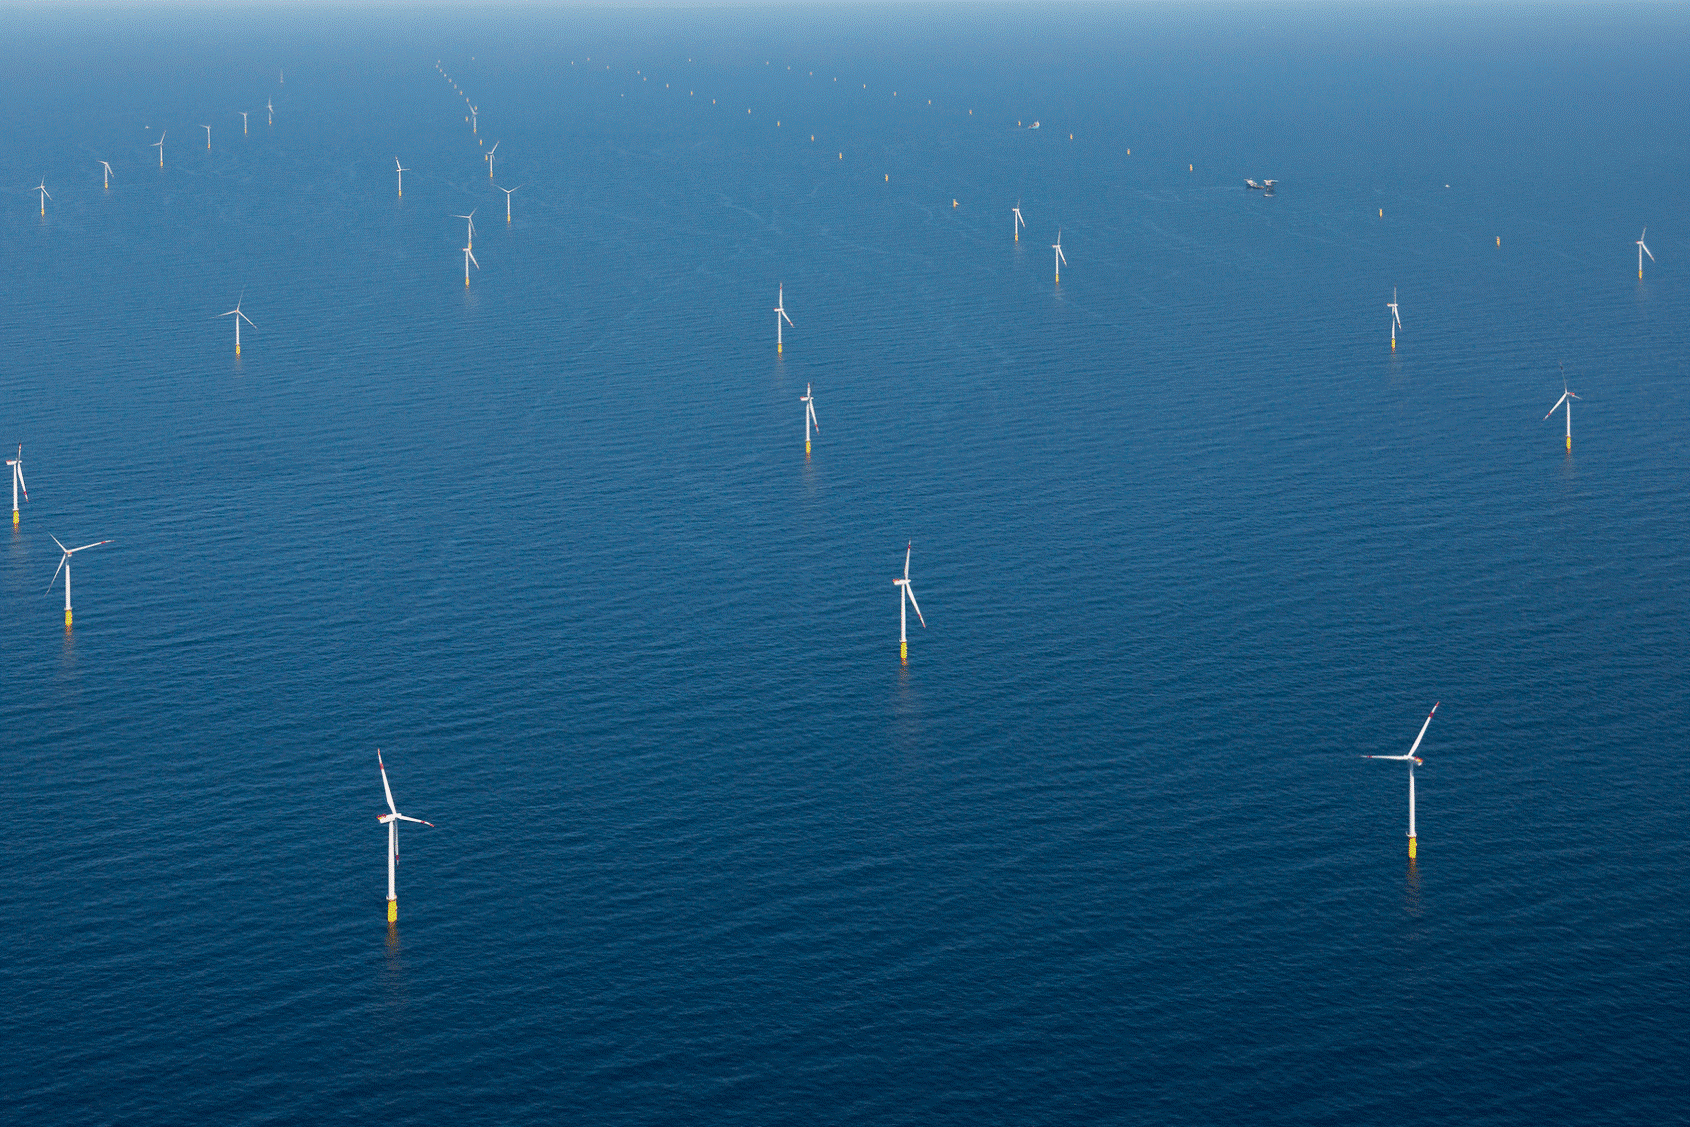 The DanTysk offshore wind farm